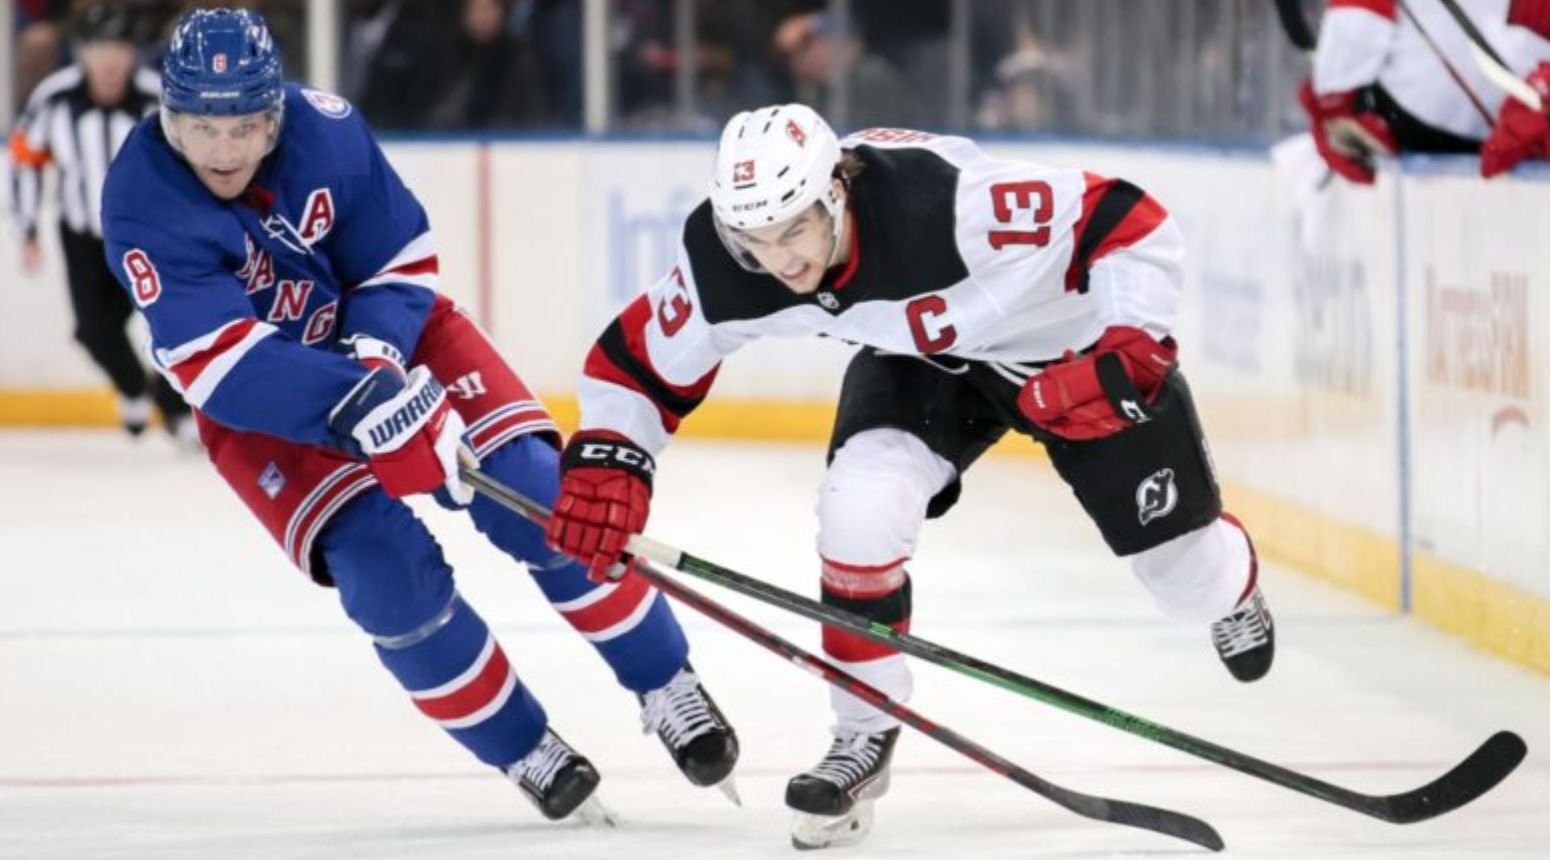 Rangers vs. Devils Game 7 odds, expert picks: Will Rangers